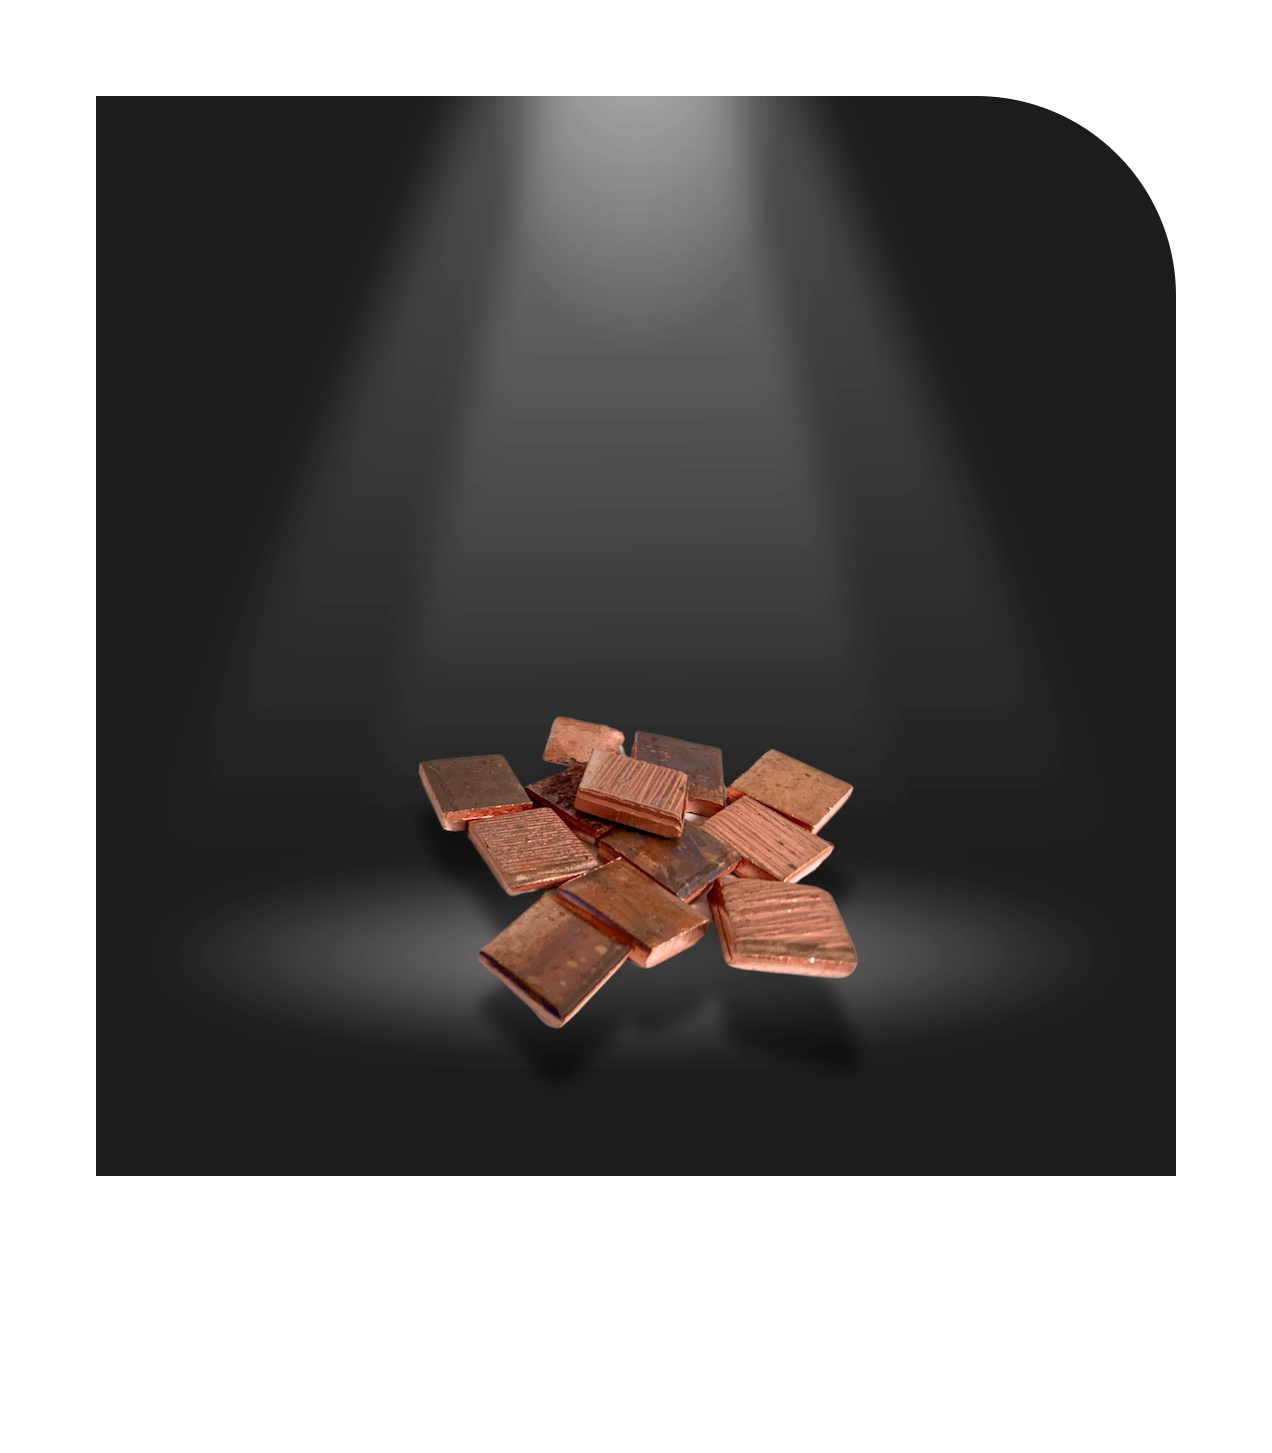 Kupfer Squares 1x1 (EL) sind Kupferanoden mit mindestens 99,99% Reinheit, geeignet für cyanidbasierte Kupferbäder, sorgen für bessere Abscheidung und Verteilung in Anodenkörben durch größere Oberfläche als Kupferkathoden.